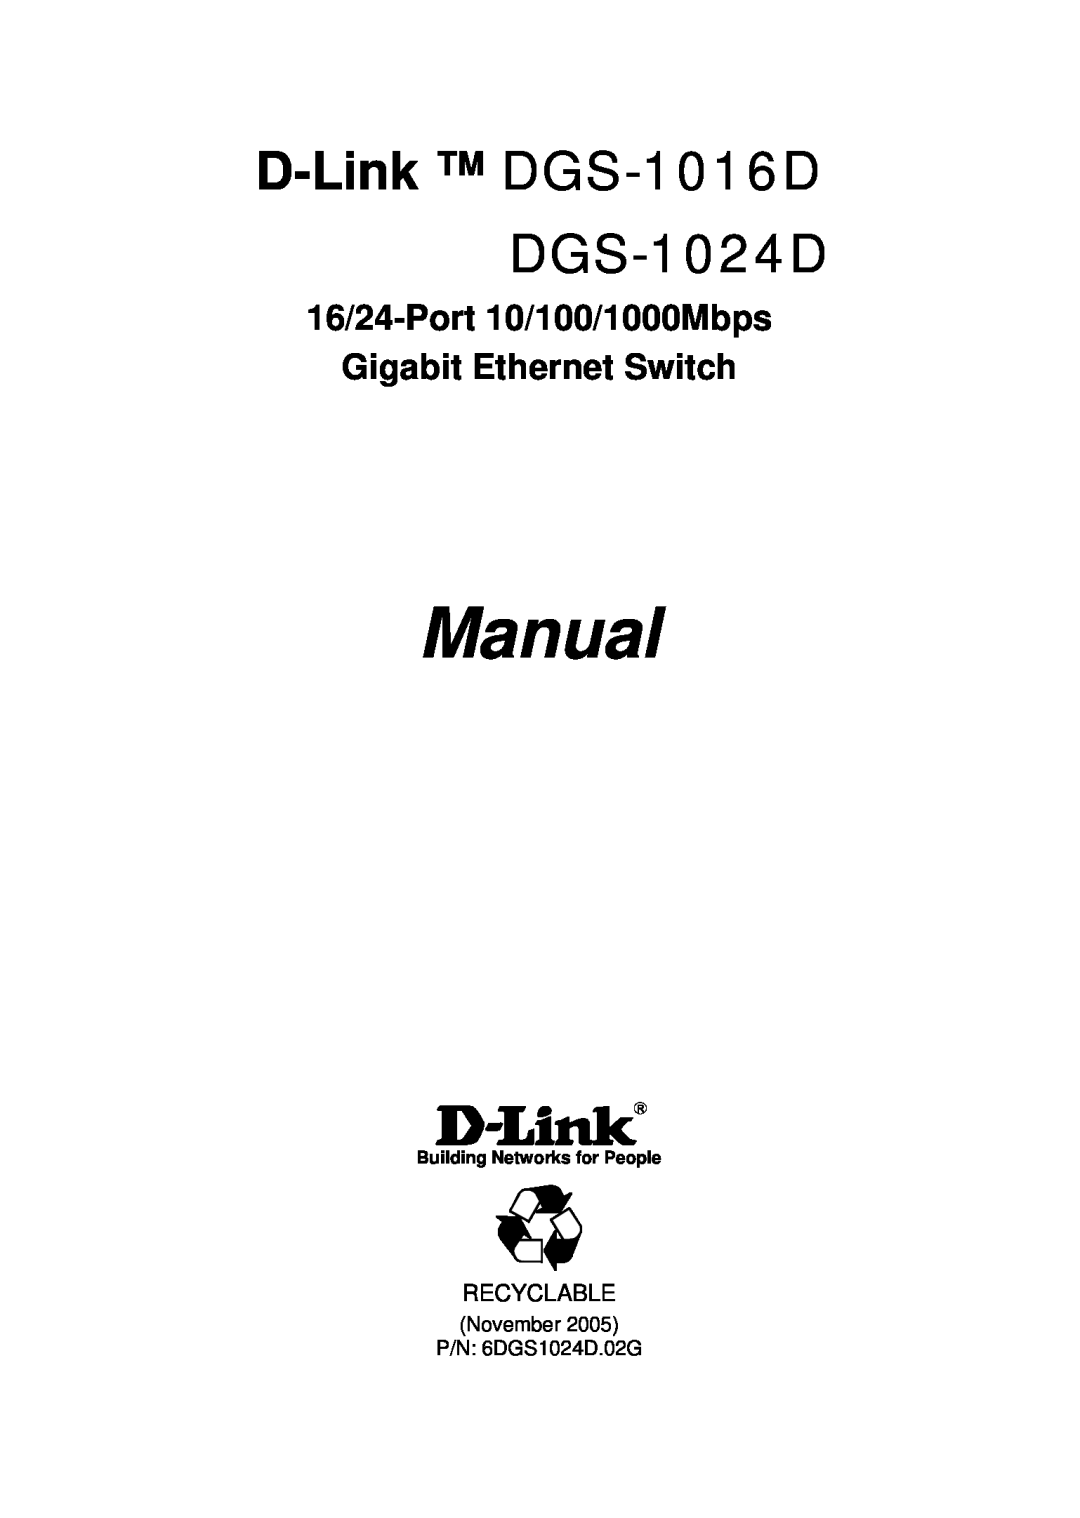 D-Link manual D-Link DGS-1016D DGS-1024D, 16/24-Port 10/100/1000Mbps Gigabit Ethernet Switch, Manual 